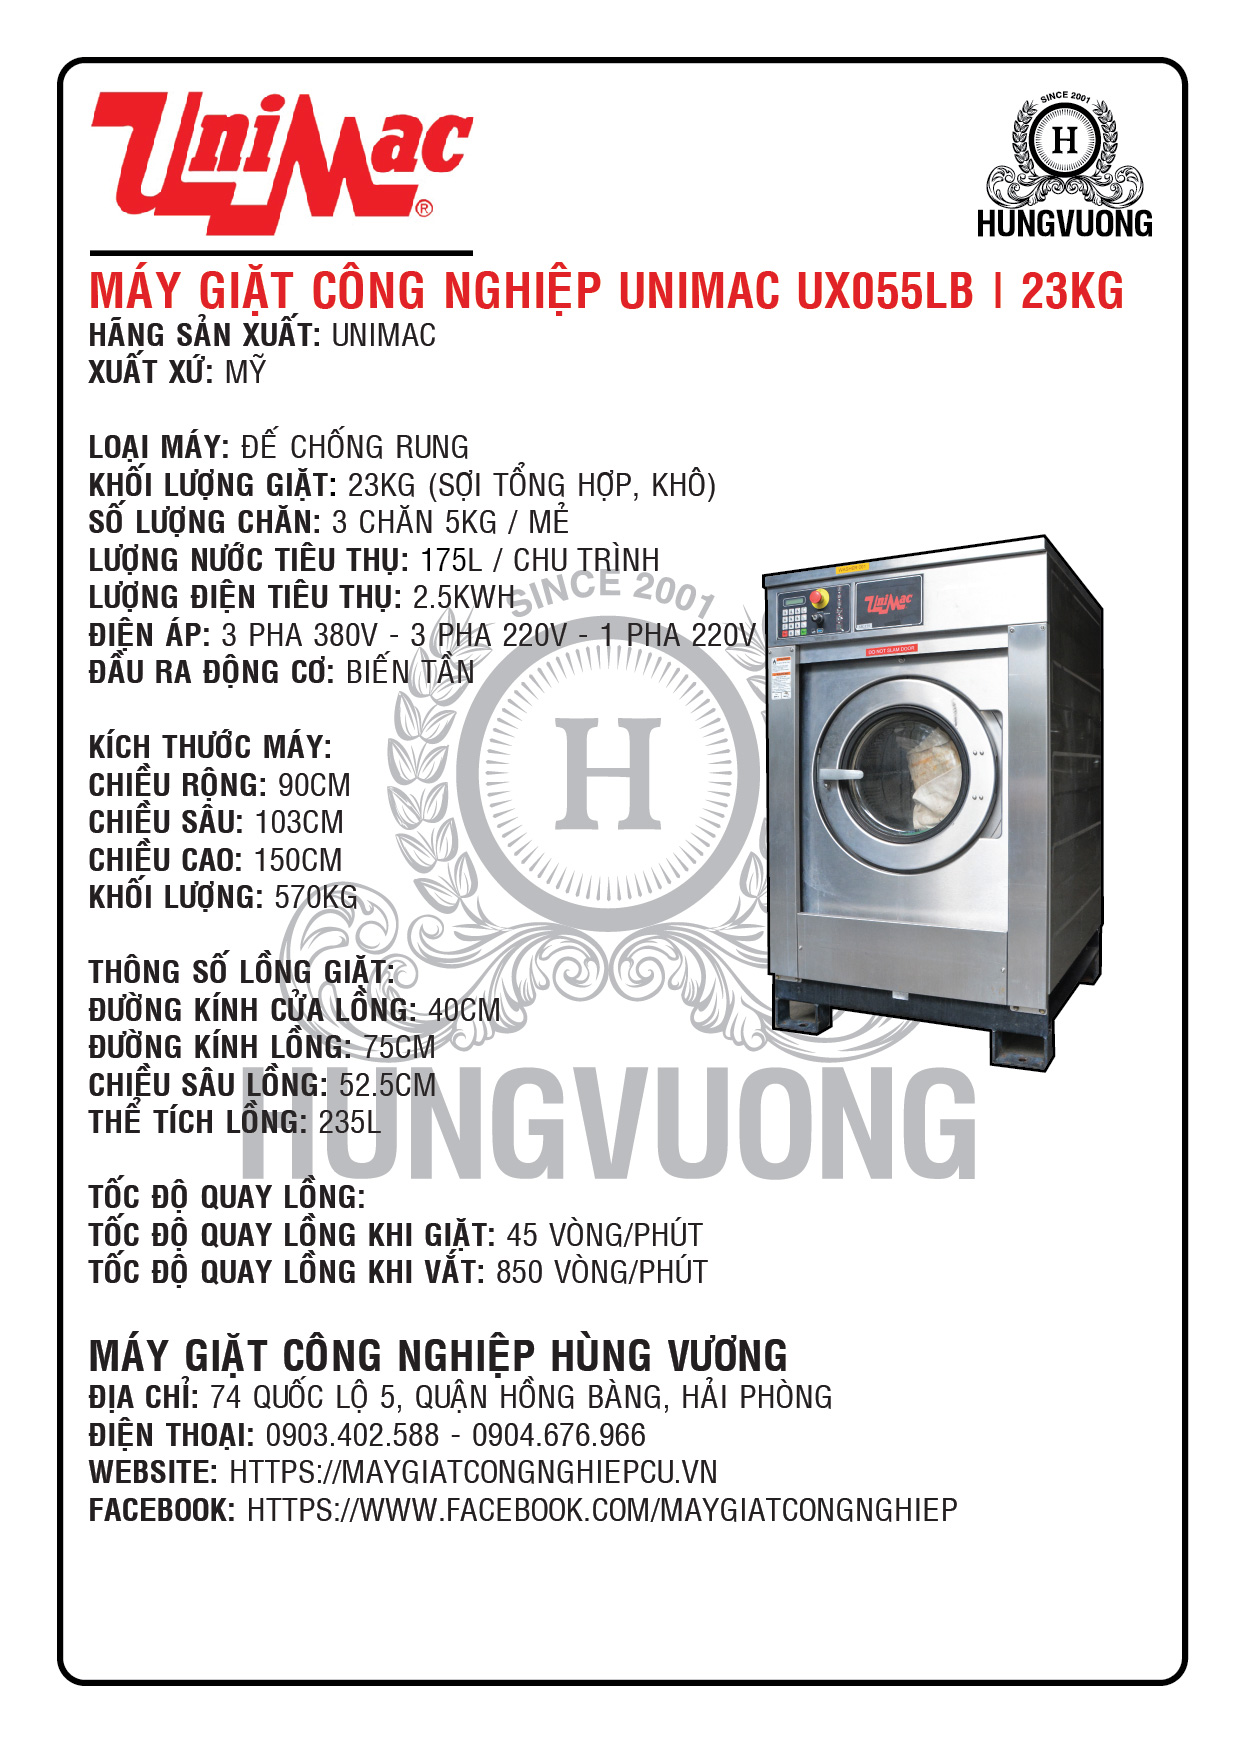 Thông số kỹ thuật máy giặt công nghiệp UNIMAC UX055LB, 23kg, chân chống rung, biến tần, Mỹ